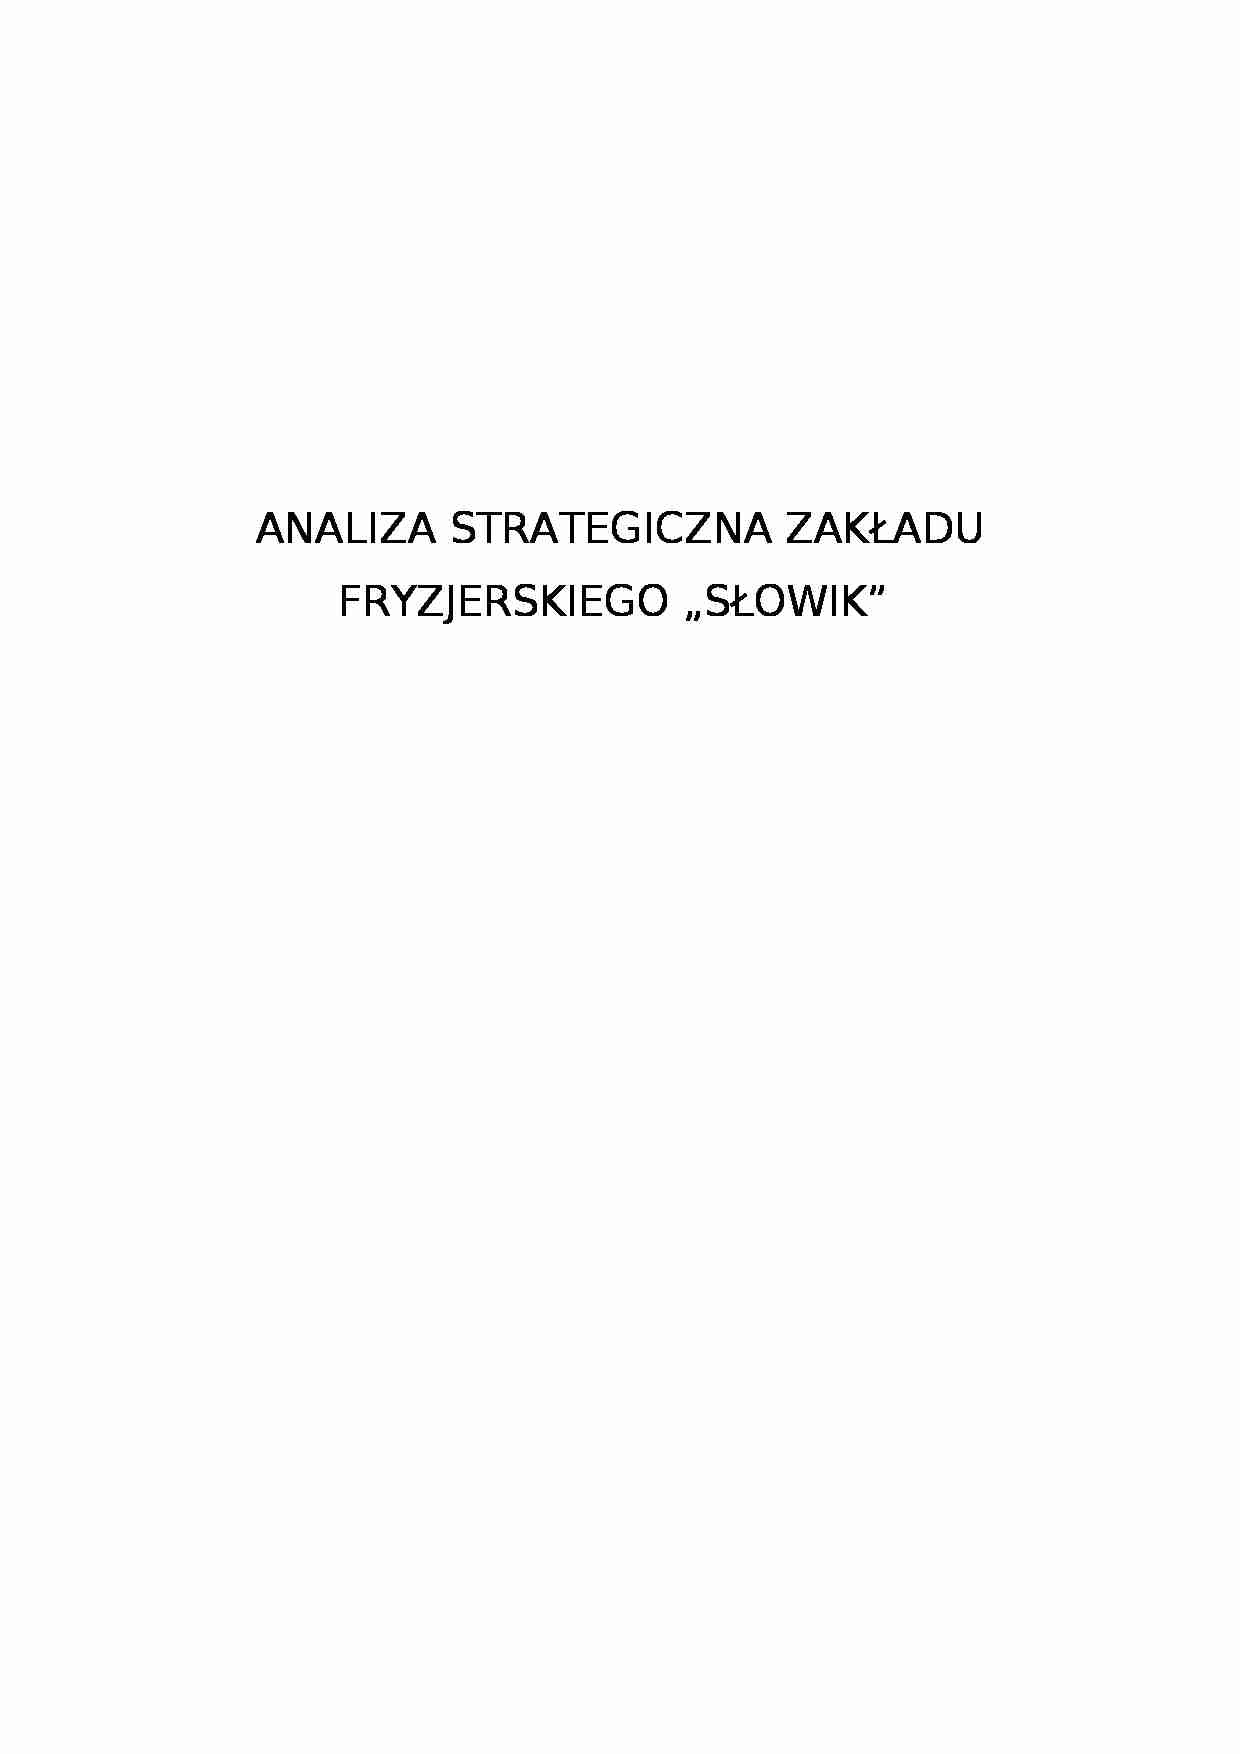 Analiza strategiczna zakładu fryzjerskiego - Analiza strukturalna sektora - strona 1